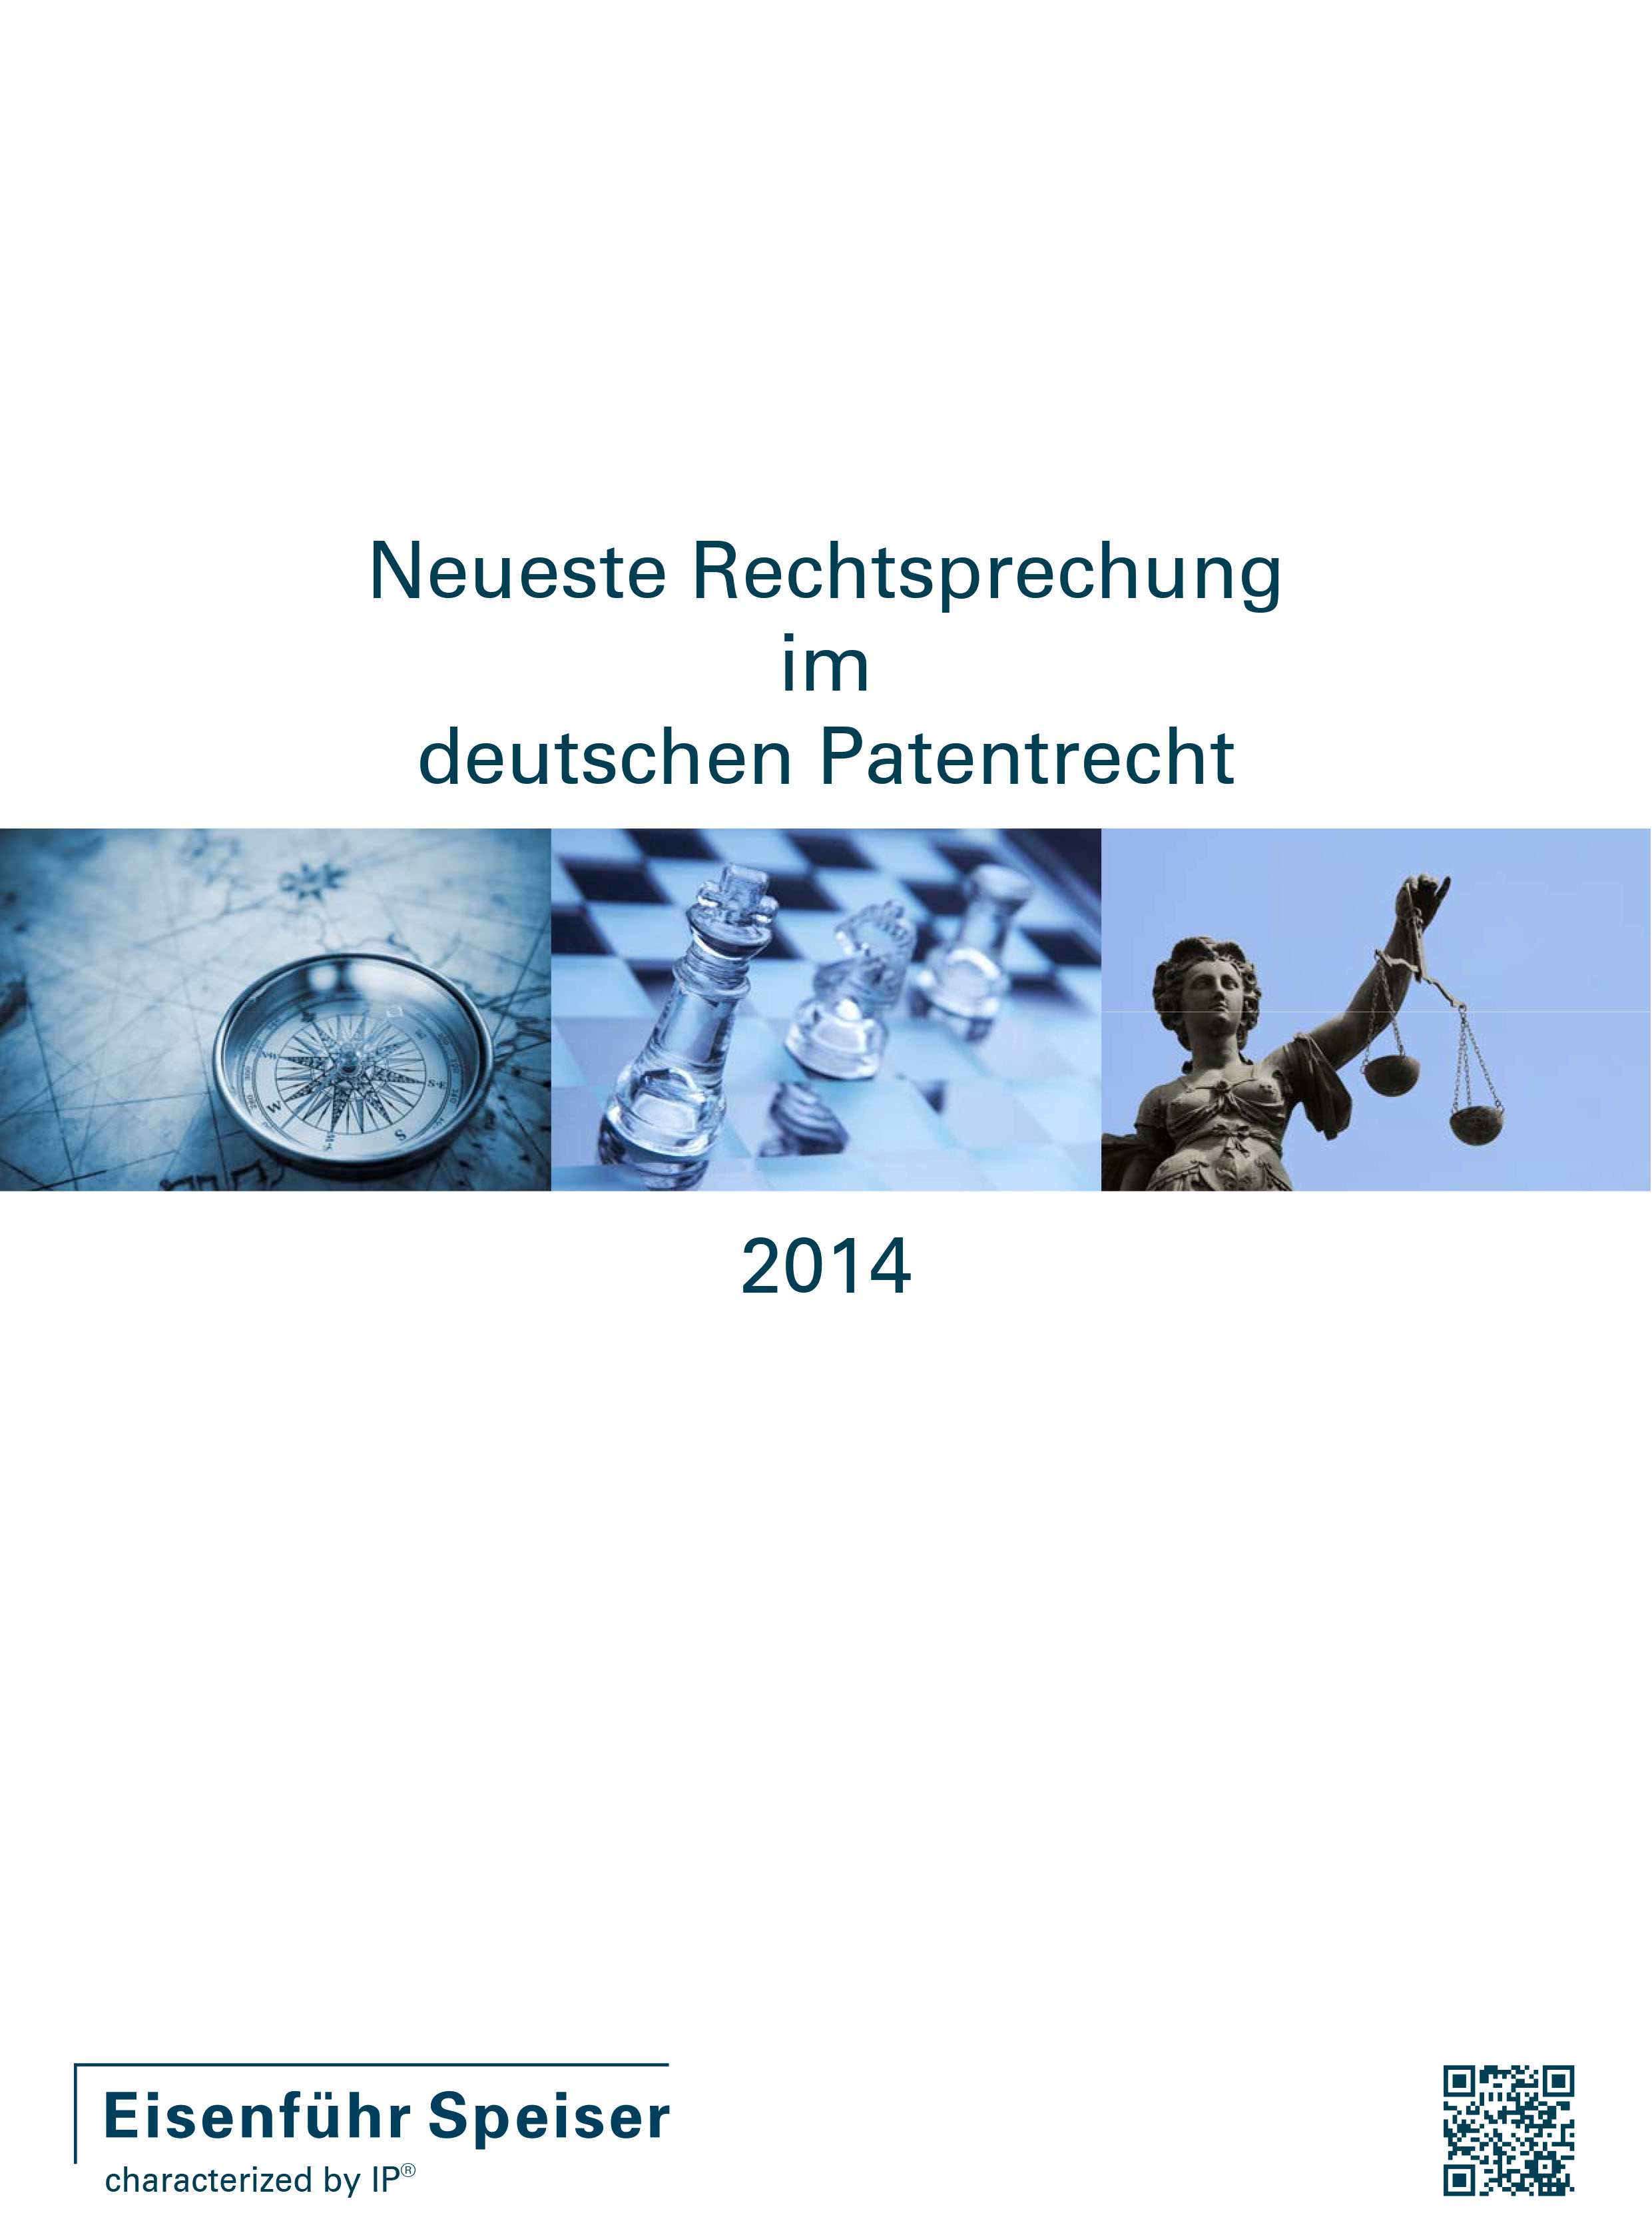 Neueste Rechtsprechung im deutschen Patentrecht 2014